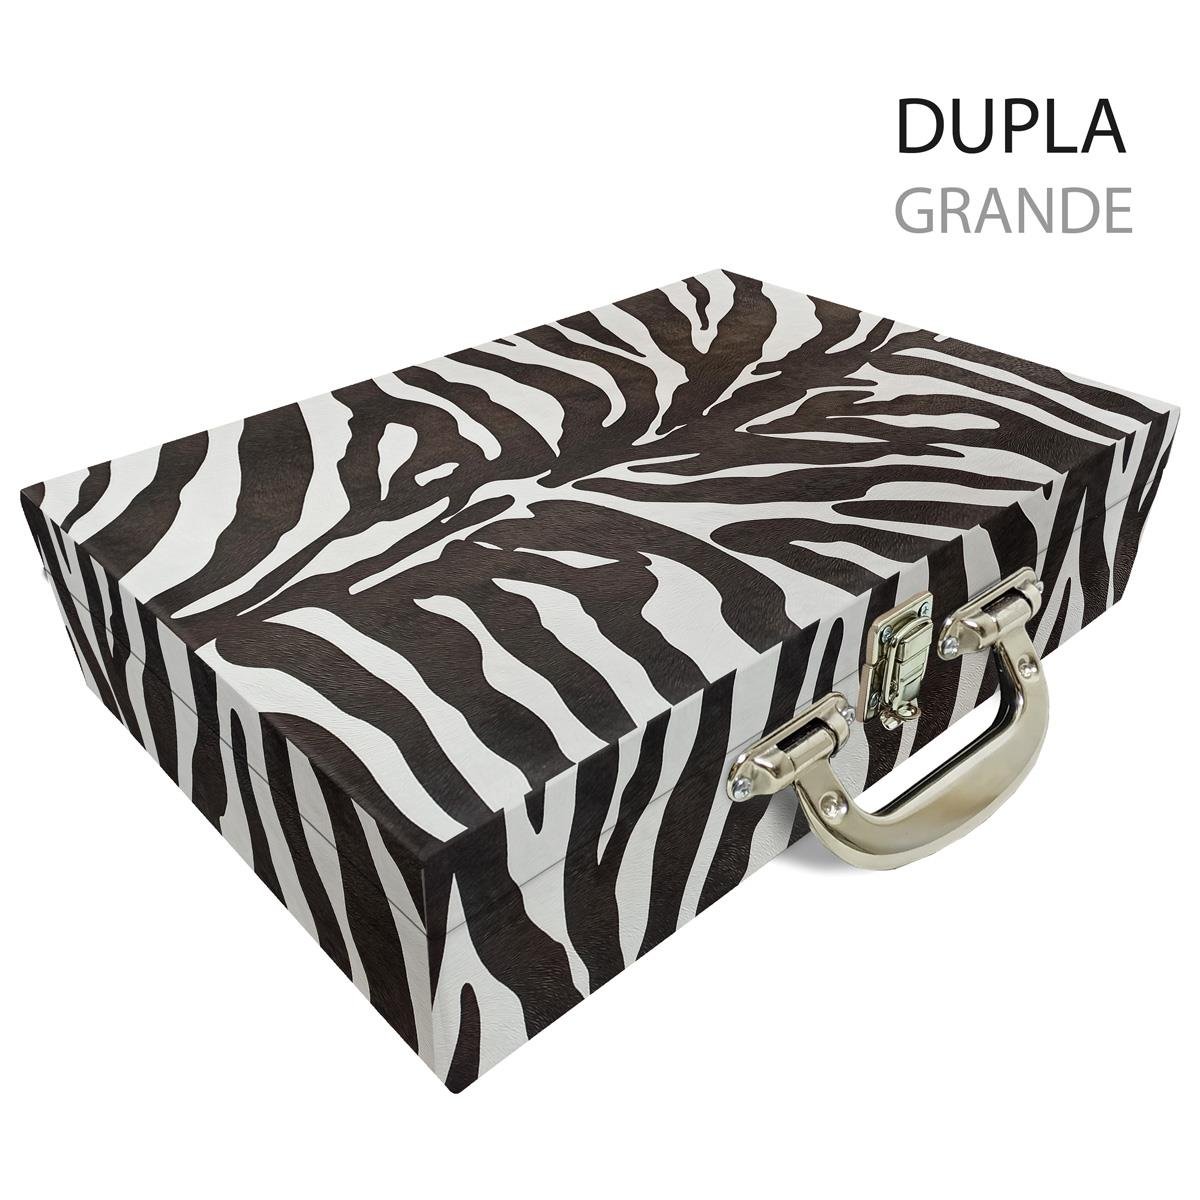 Maleta Dupla Grande Zebra Com Alça Cromada e Espelho - Sob Encomenda